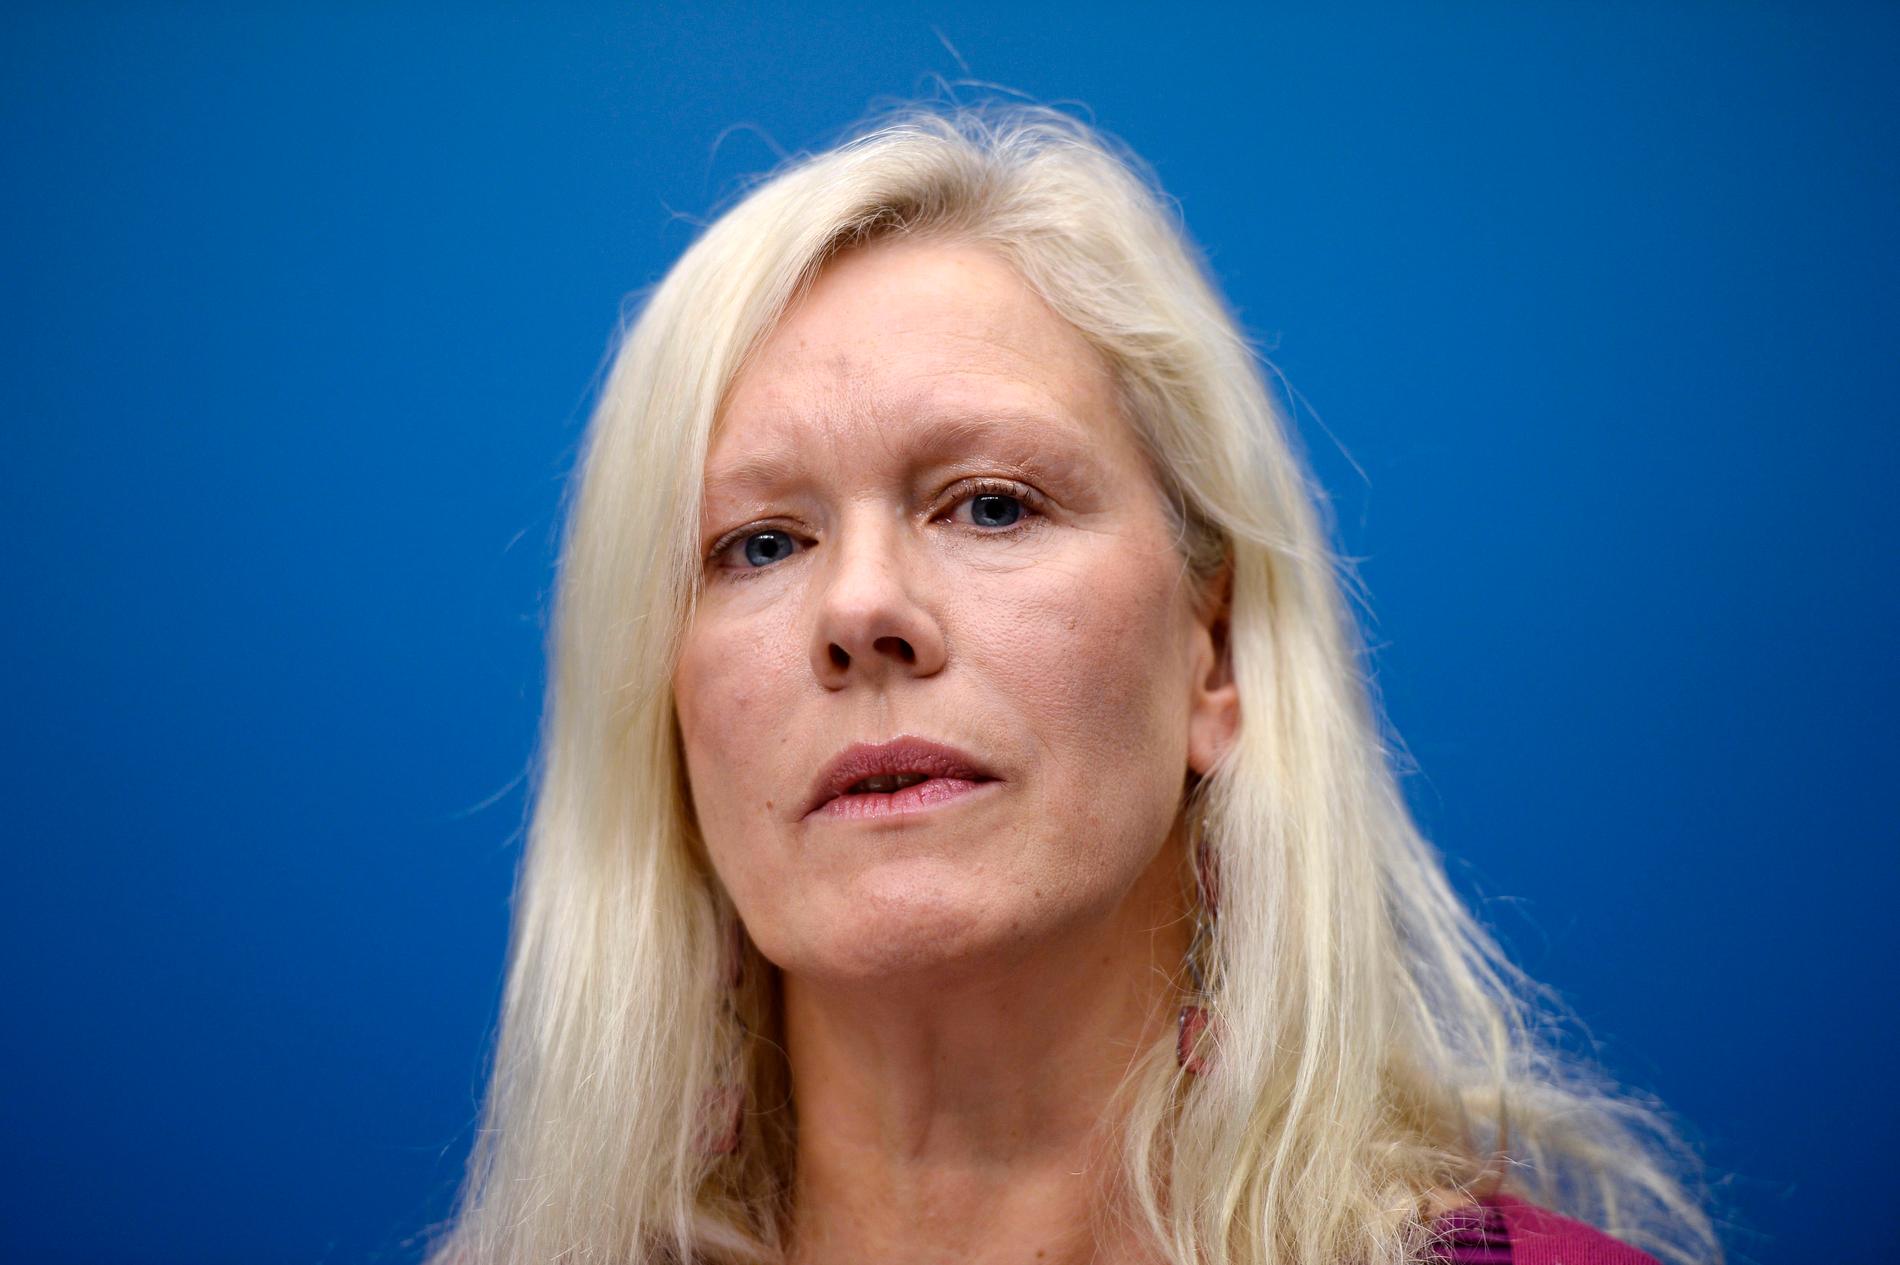 Anna Lindstedt